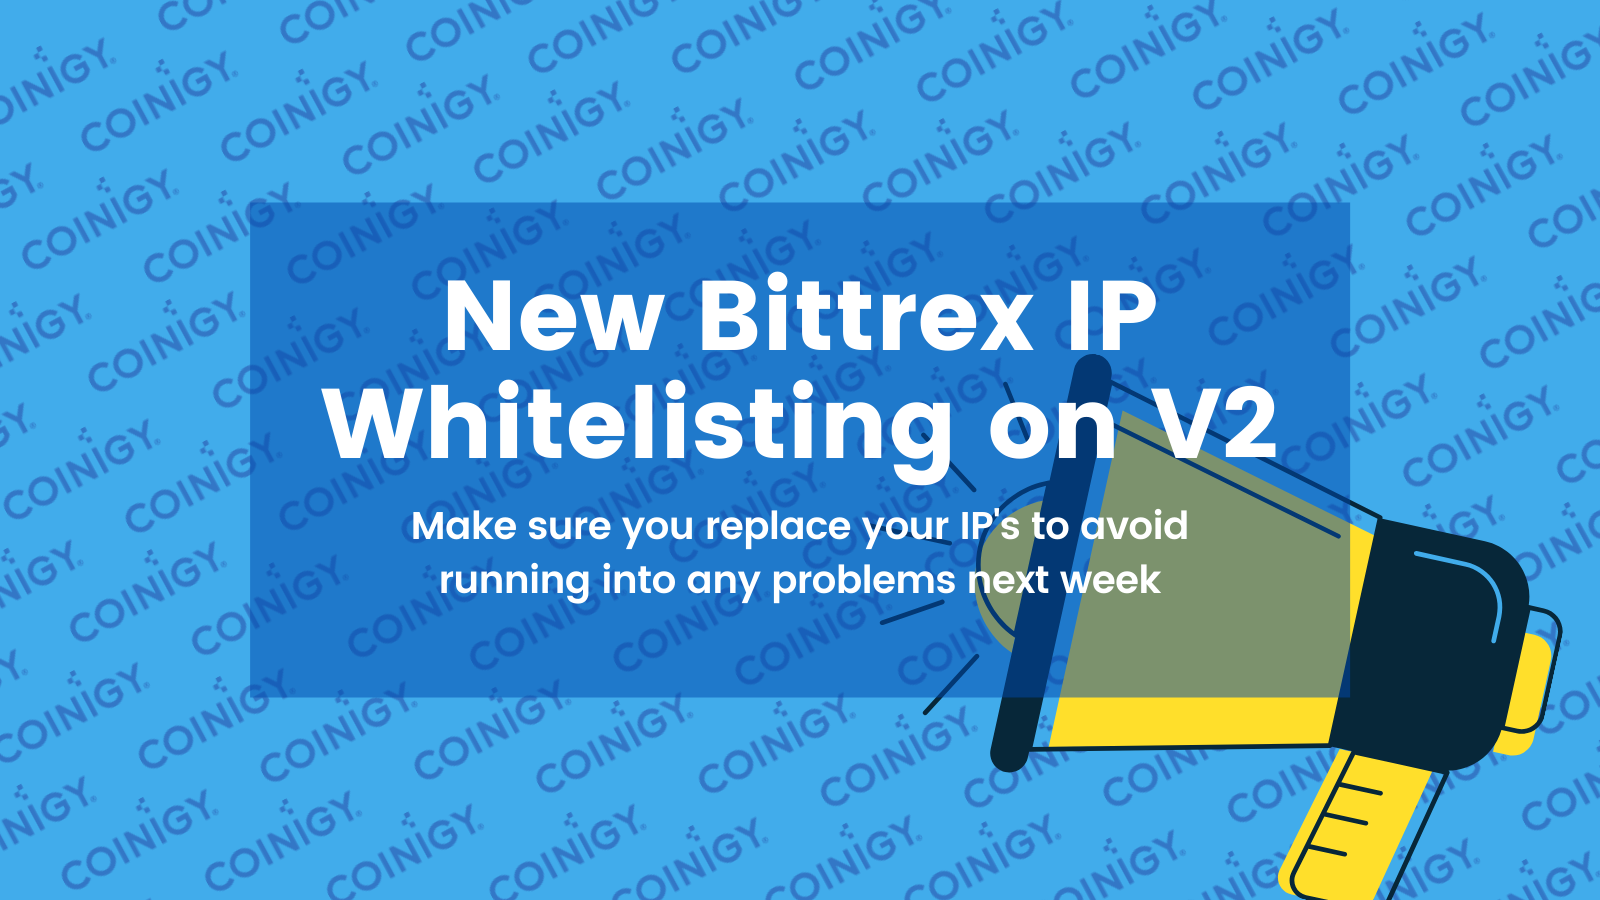 New Bittrex IP Whitelisting on V2